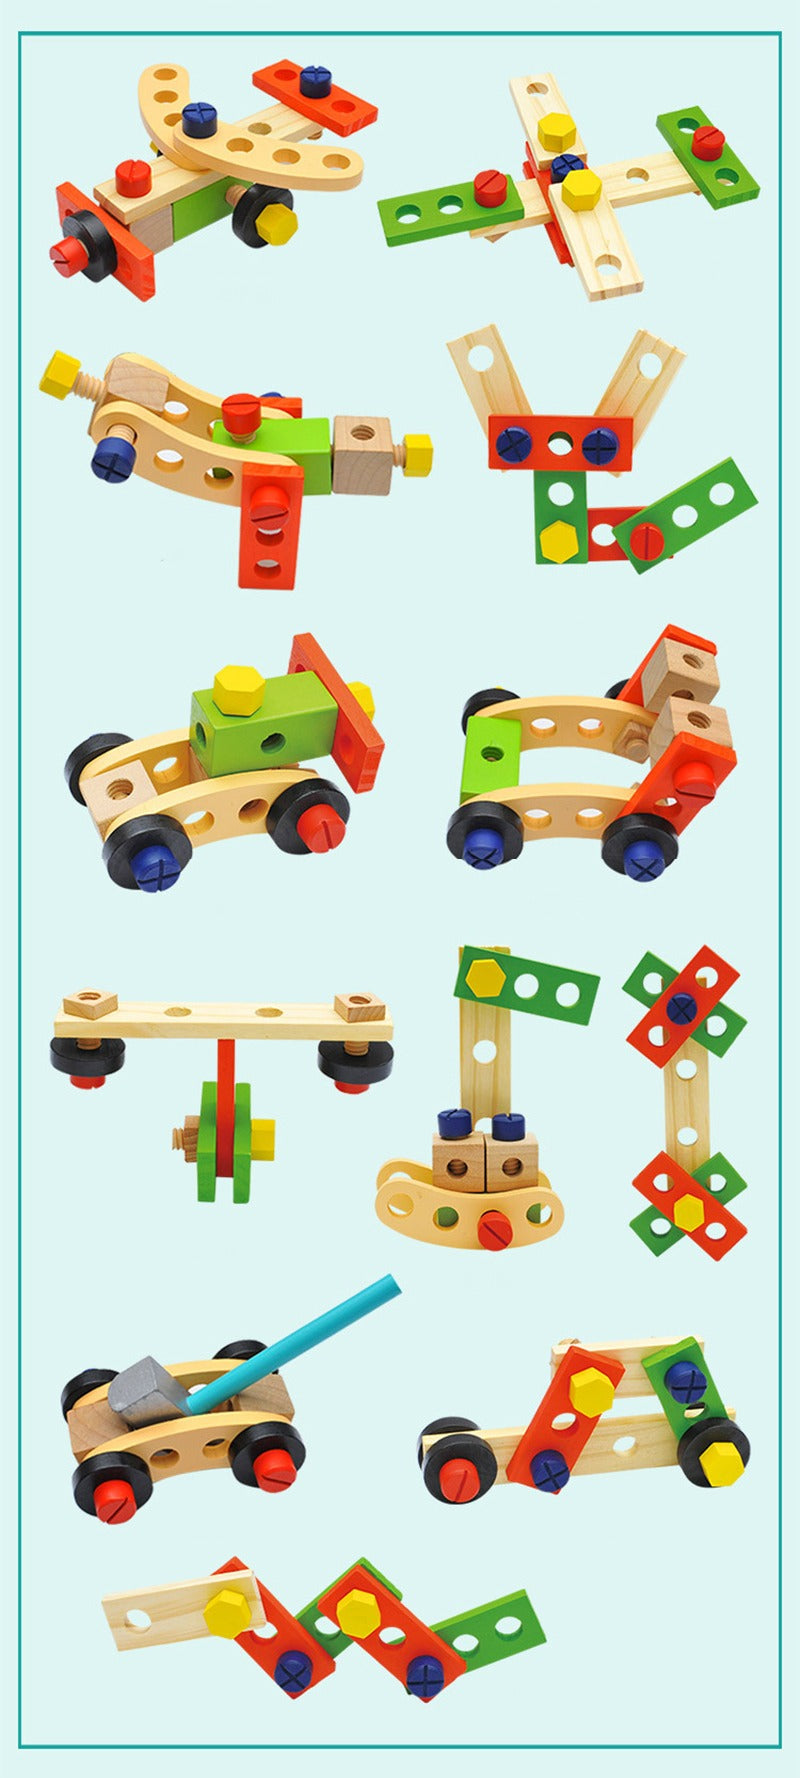 34-teiliges Werkzeugkoffer-Set für Kinder